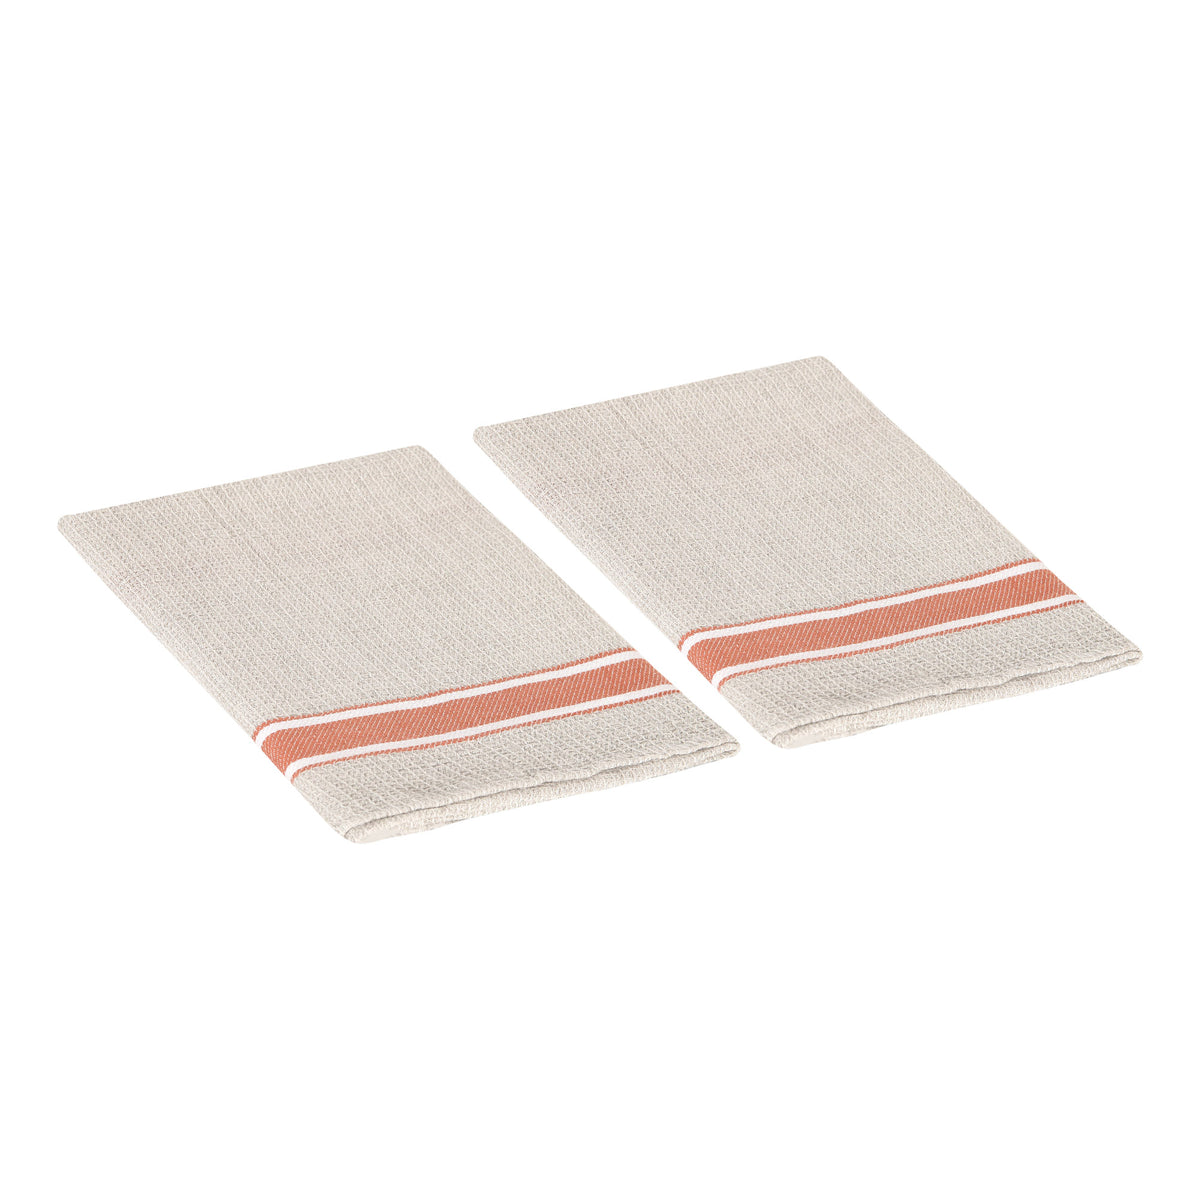 Rustic Napa Linen Kitchen Towel